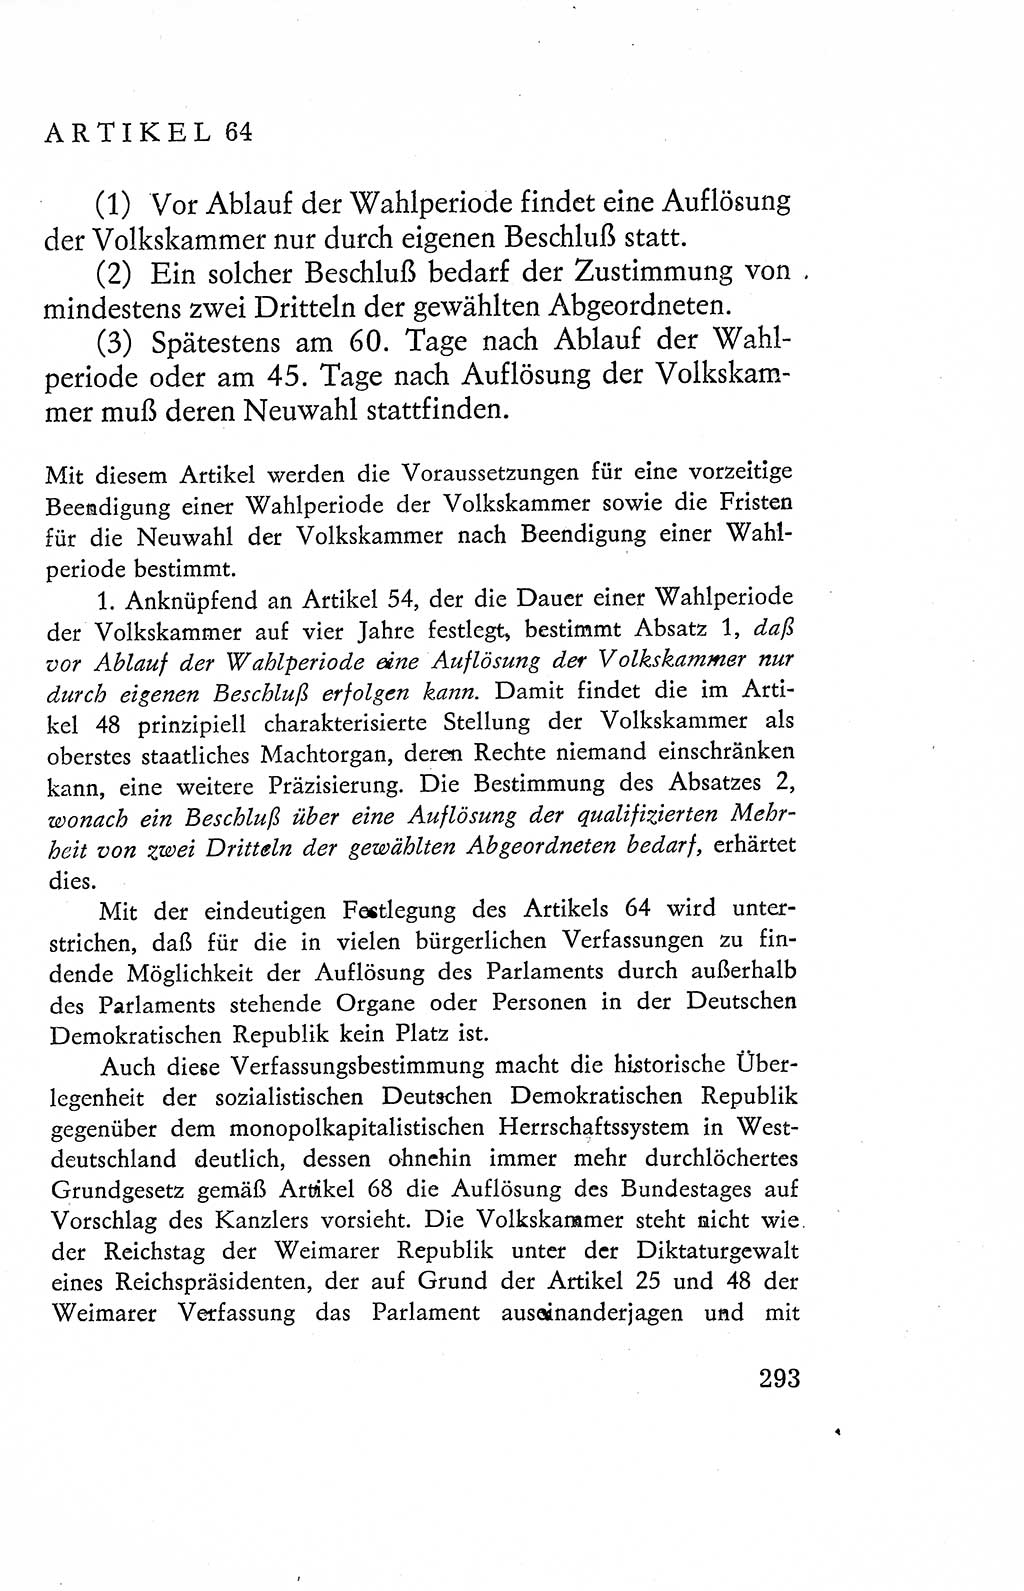 Verfassung der Deutschen Demokratischen Republik (DDR), Dokumente, Kommentar 1969, Band 2, Seite 293 (Verf. DDR Dok. Komm. 1969, Bd. 2, S. 293)